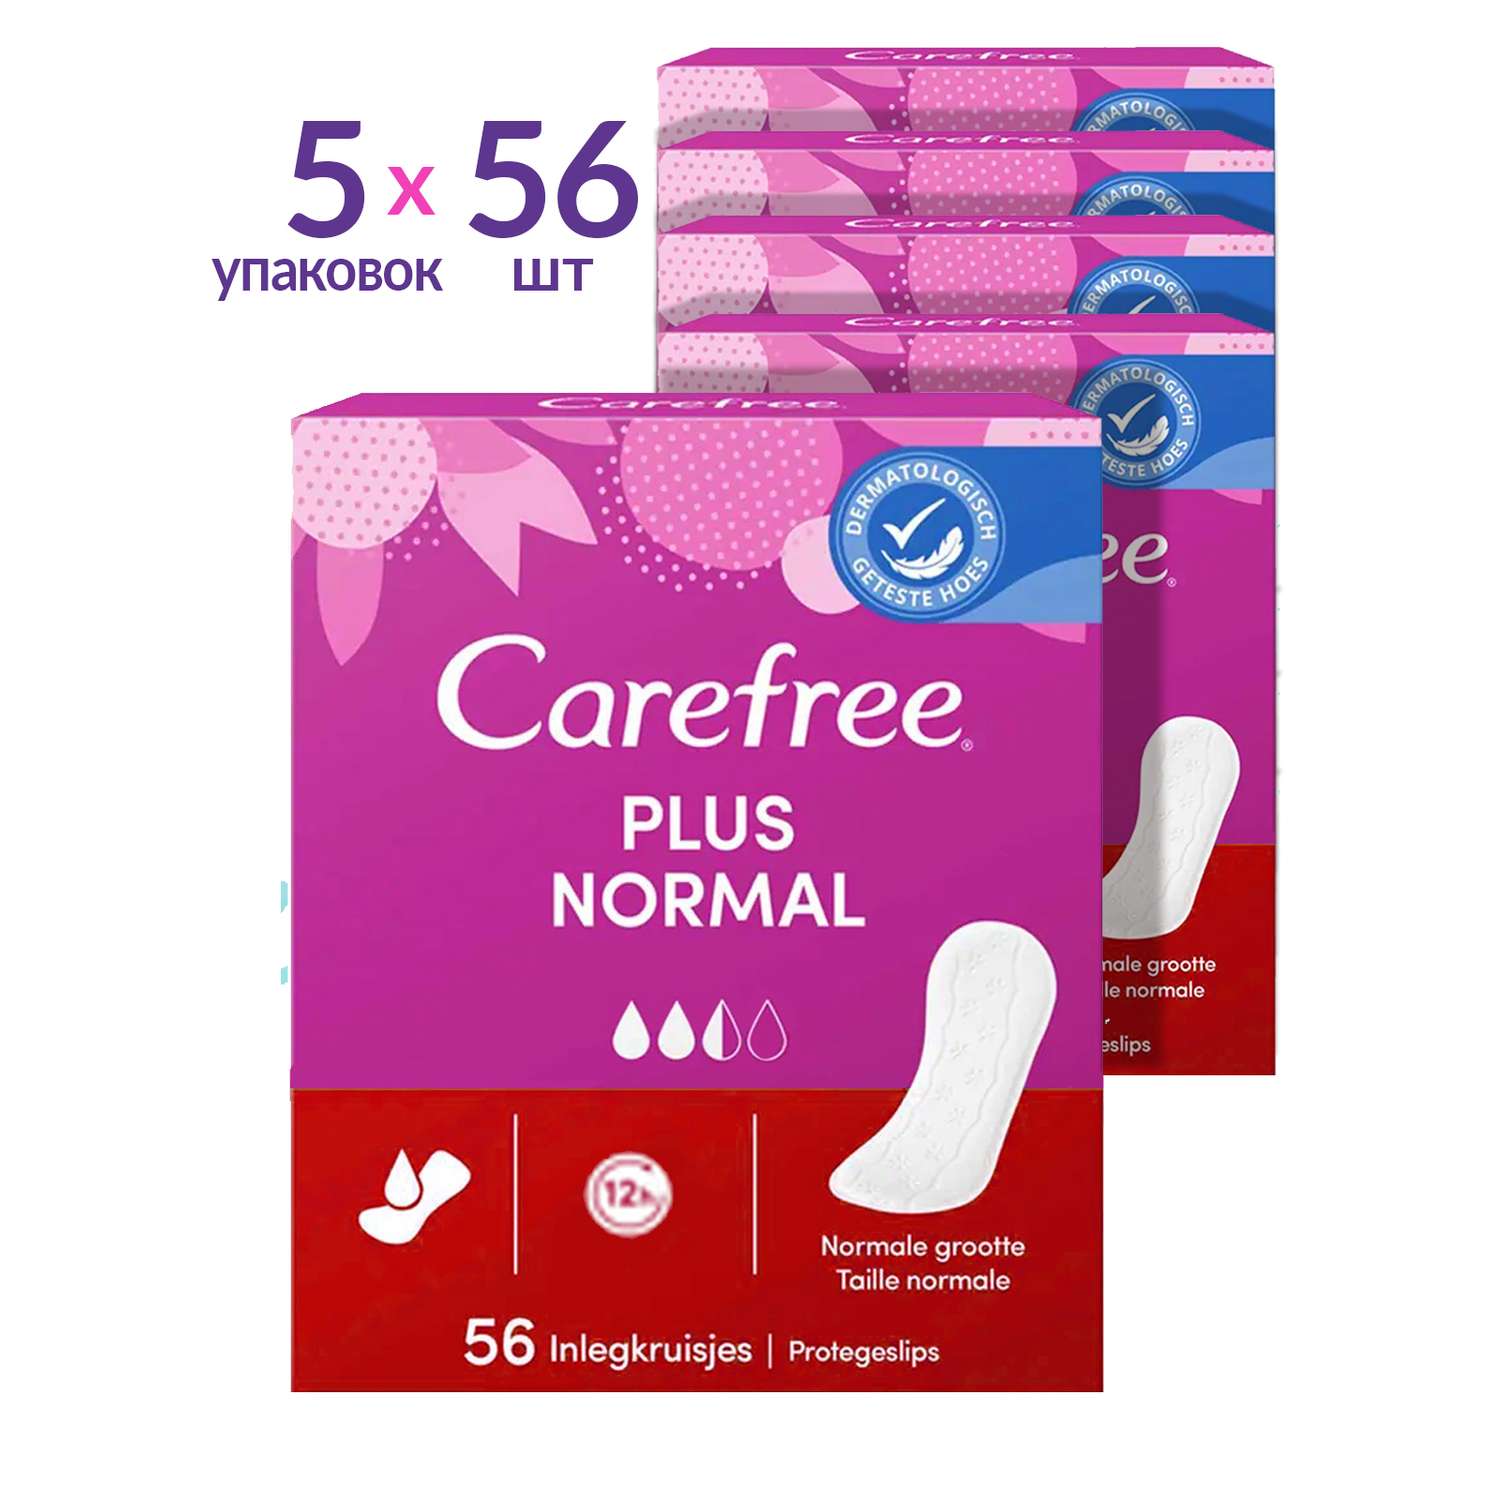 Прокладки гигиенические Carefree Plus Normal с легким ароматом свежести 56 шт х 5 упаковок - фото 1